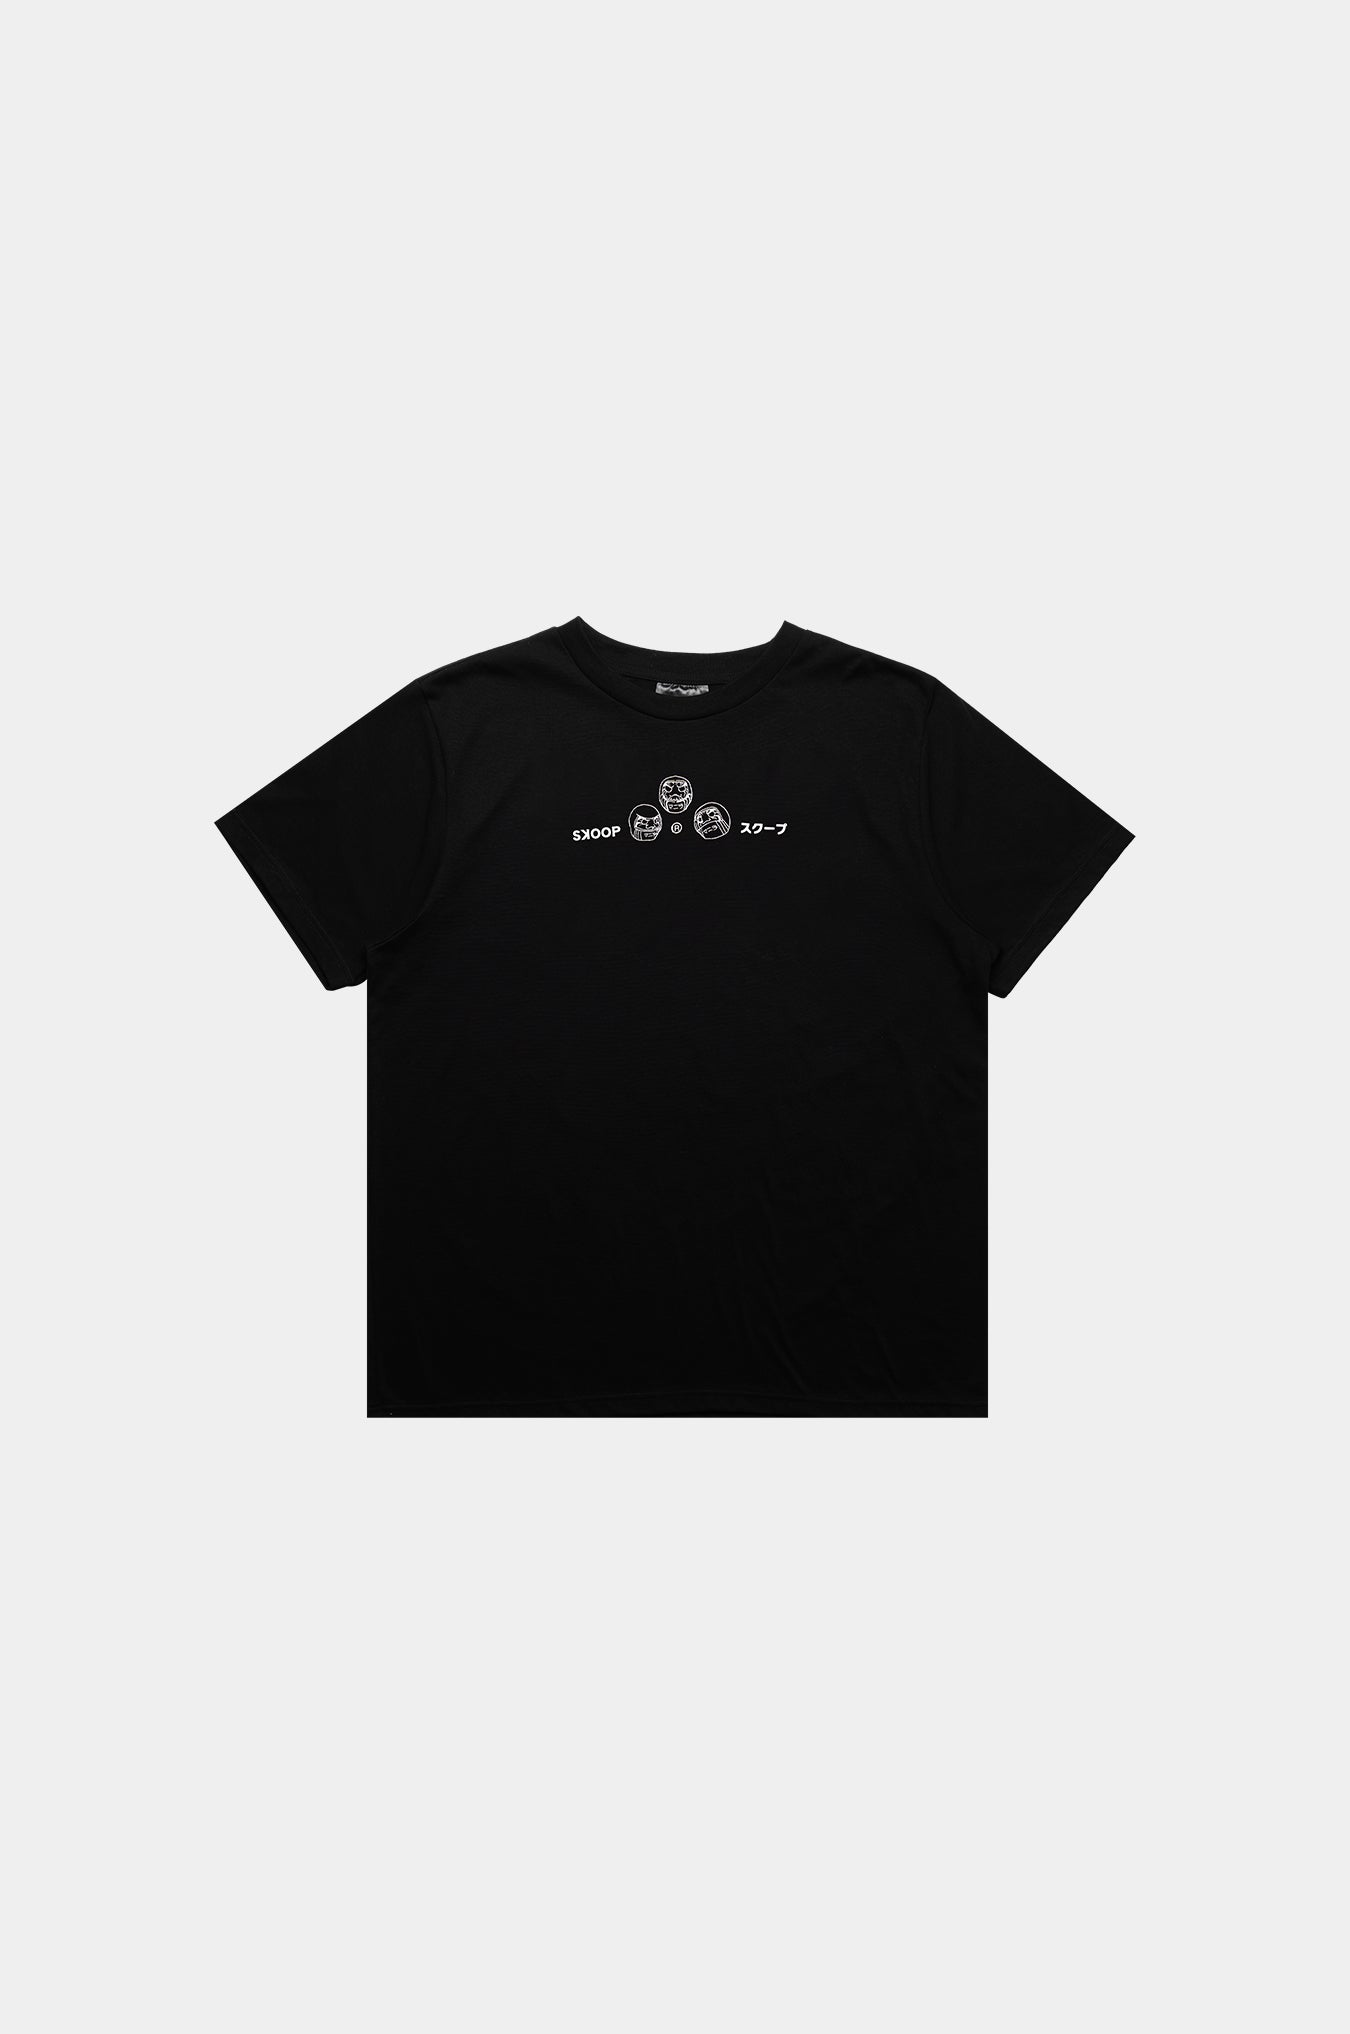 SKOOP® Daruma Creed Shirt Black - SKOOP Kommunity